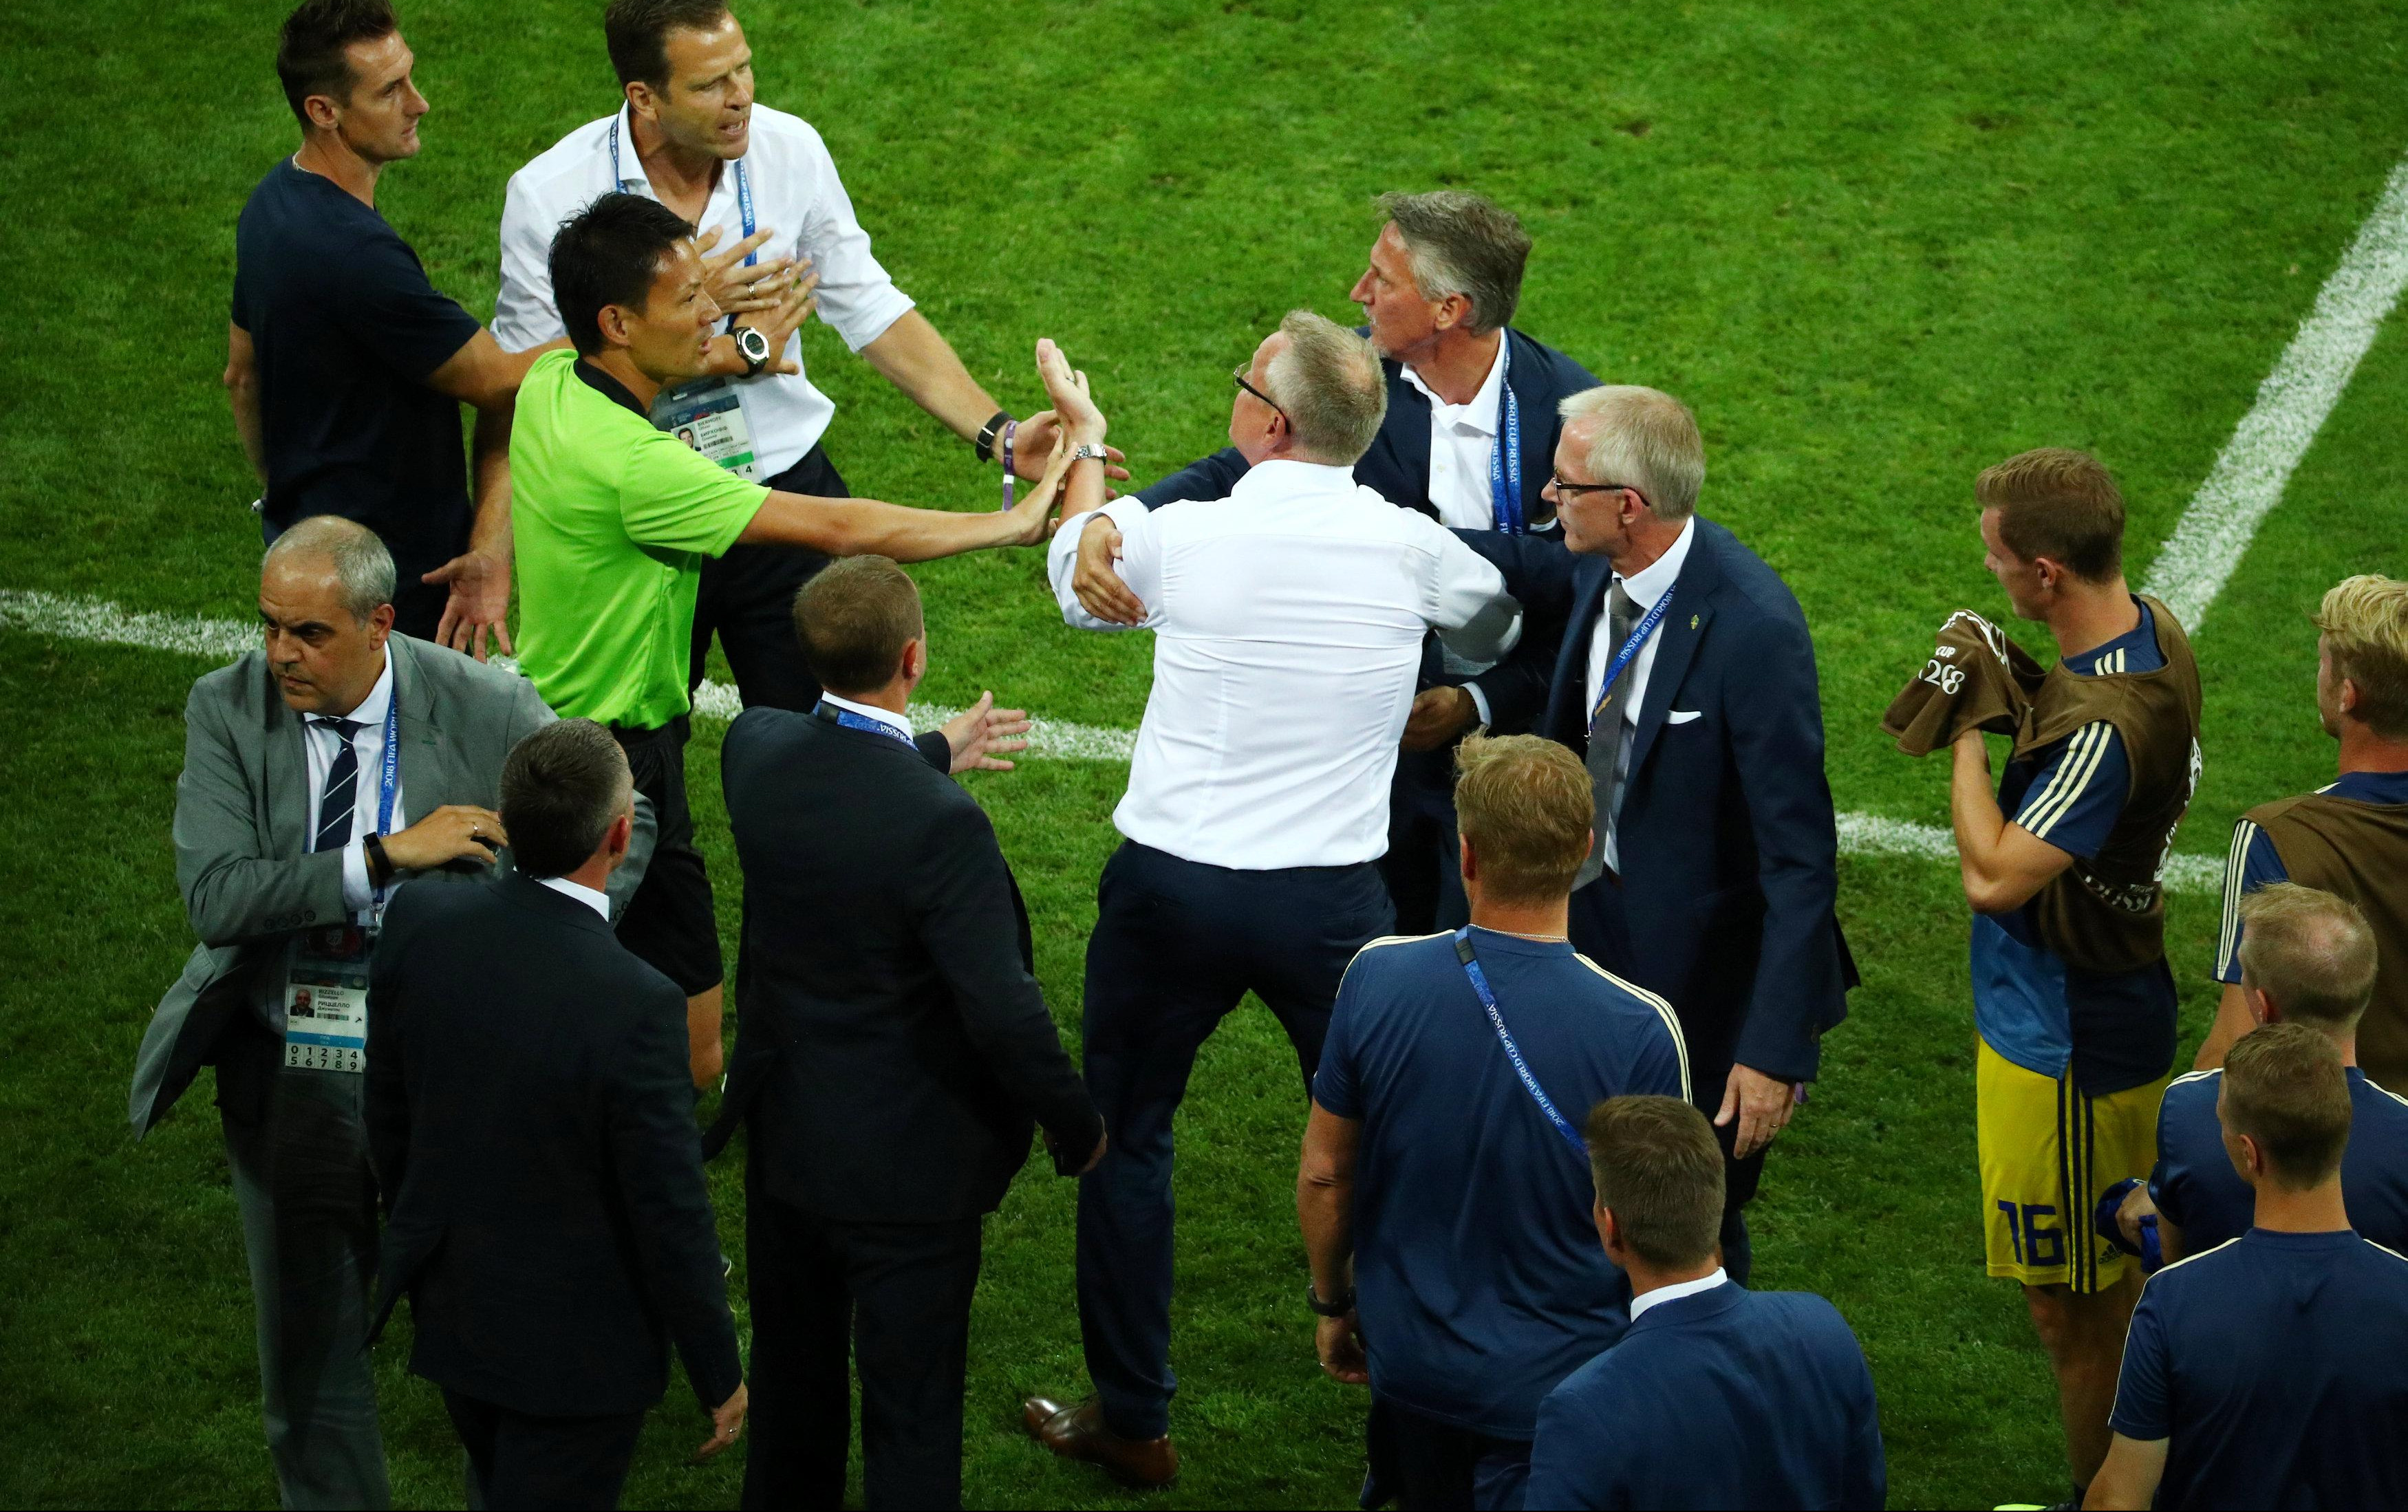 (FOTO) KAD "VIKINZI" POBESNE! Umalo tuča između trenera Švedske i Nemačke!